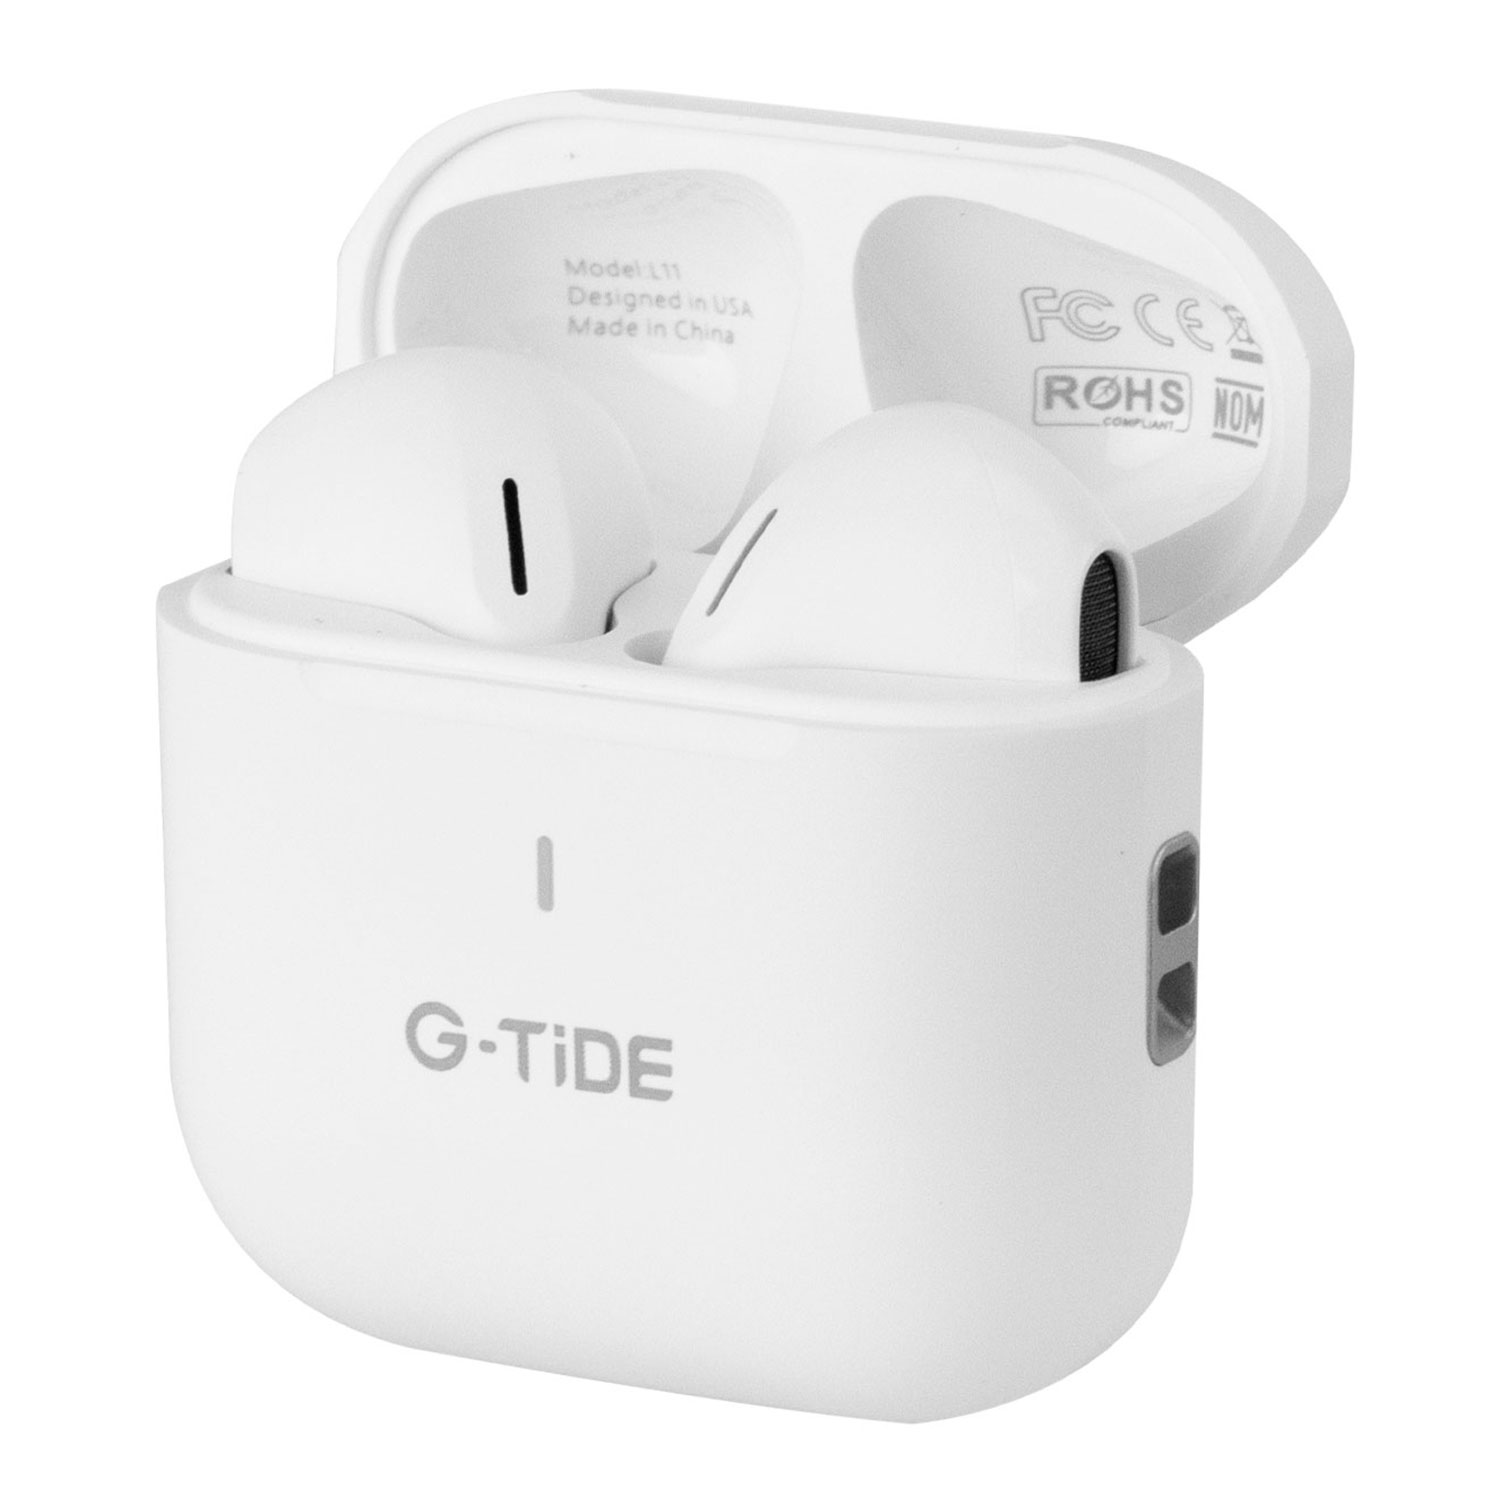 Fone de Ouvido G-Tide L11 Earphones TWS004A Wireless Bluetooth - Branco